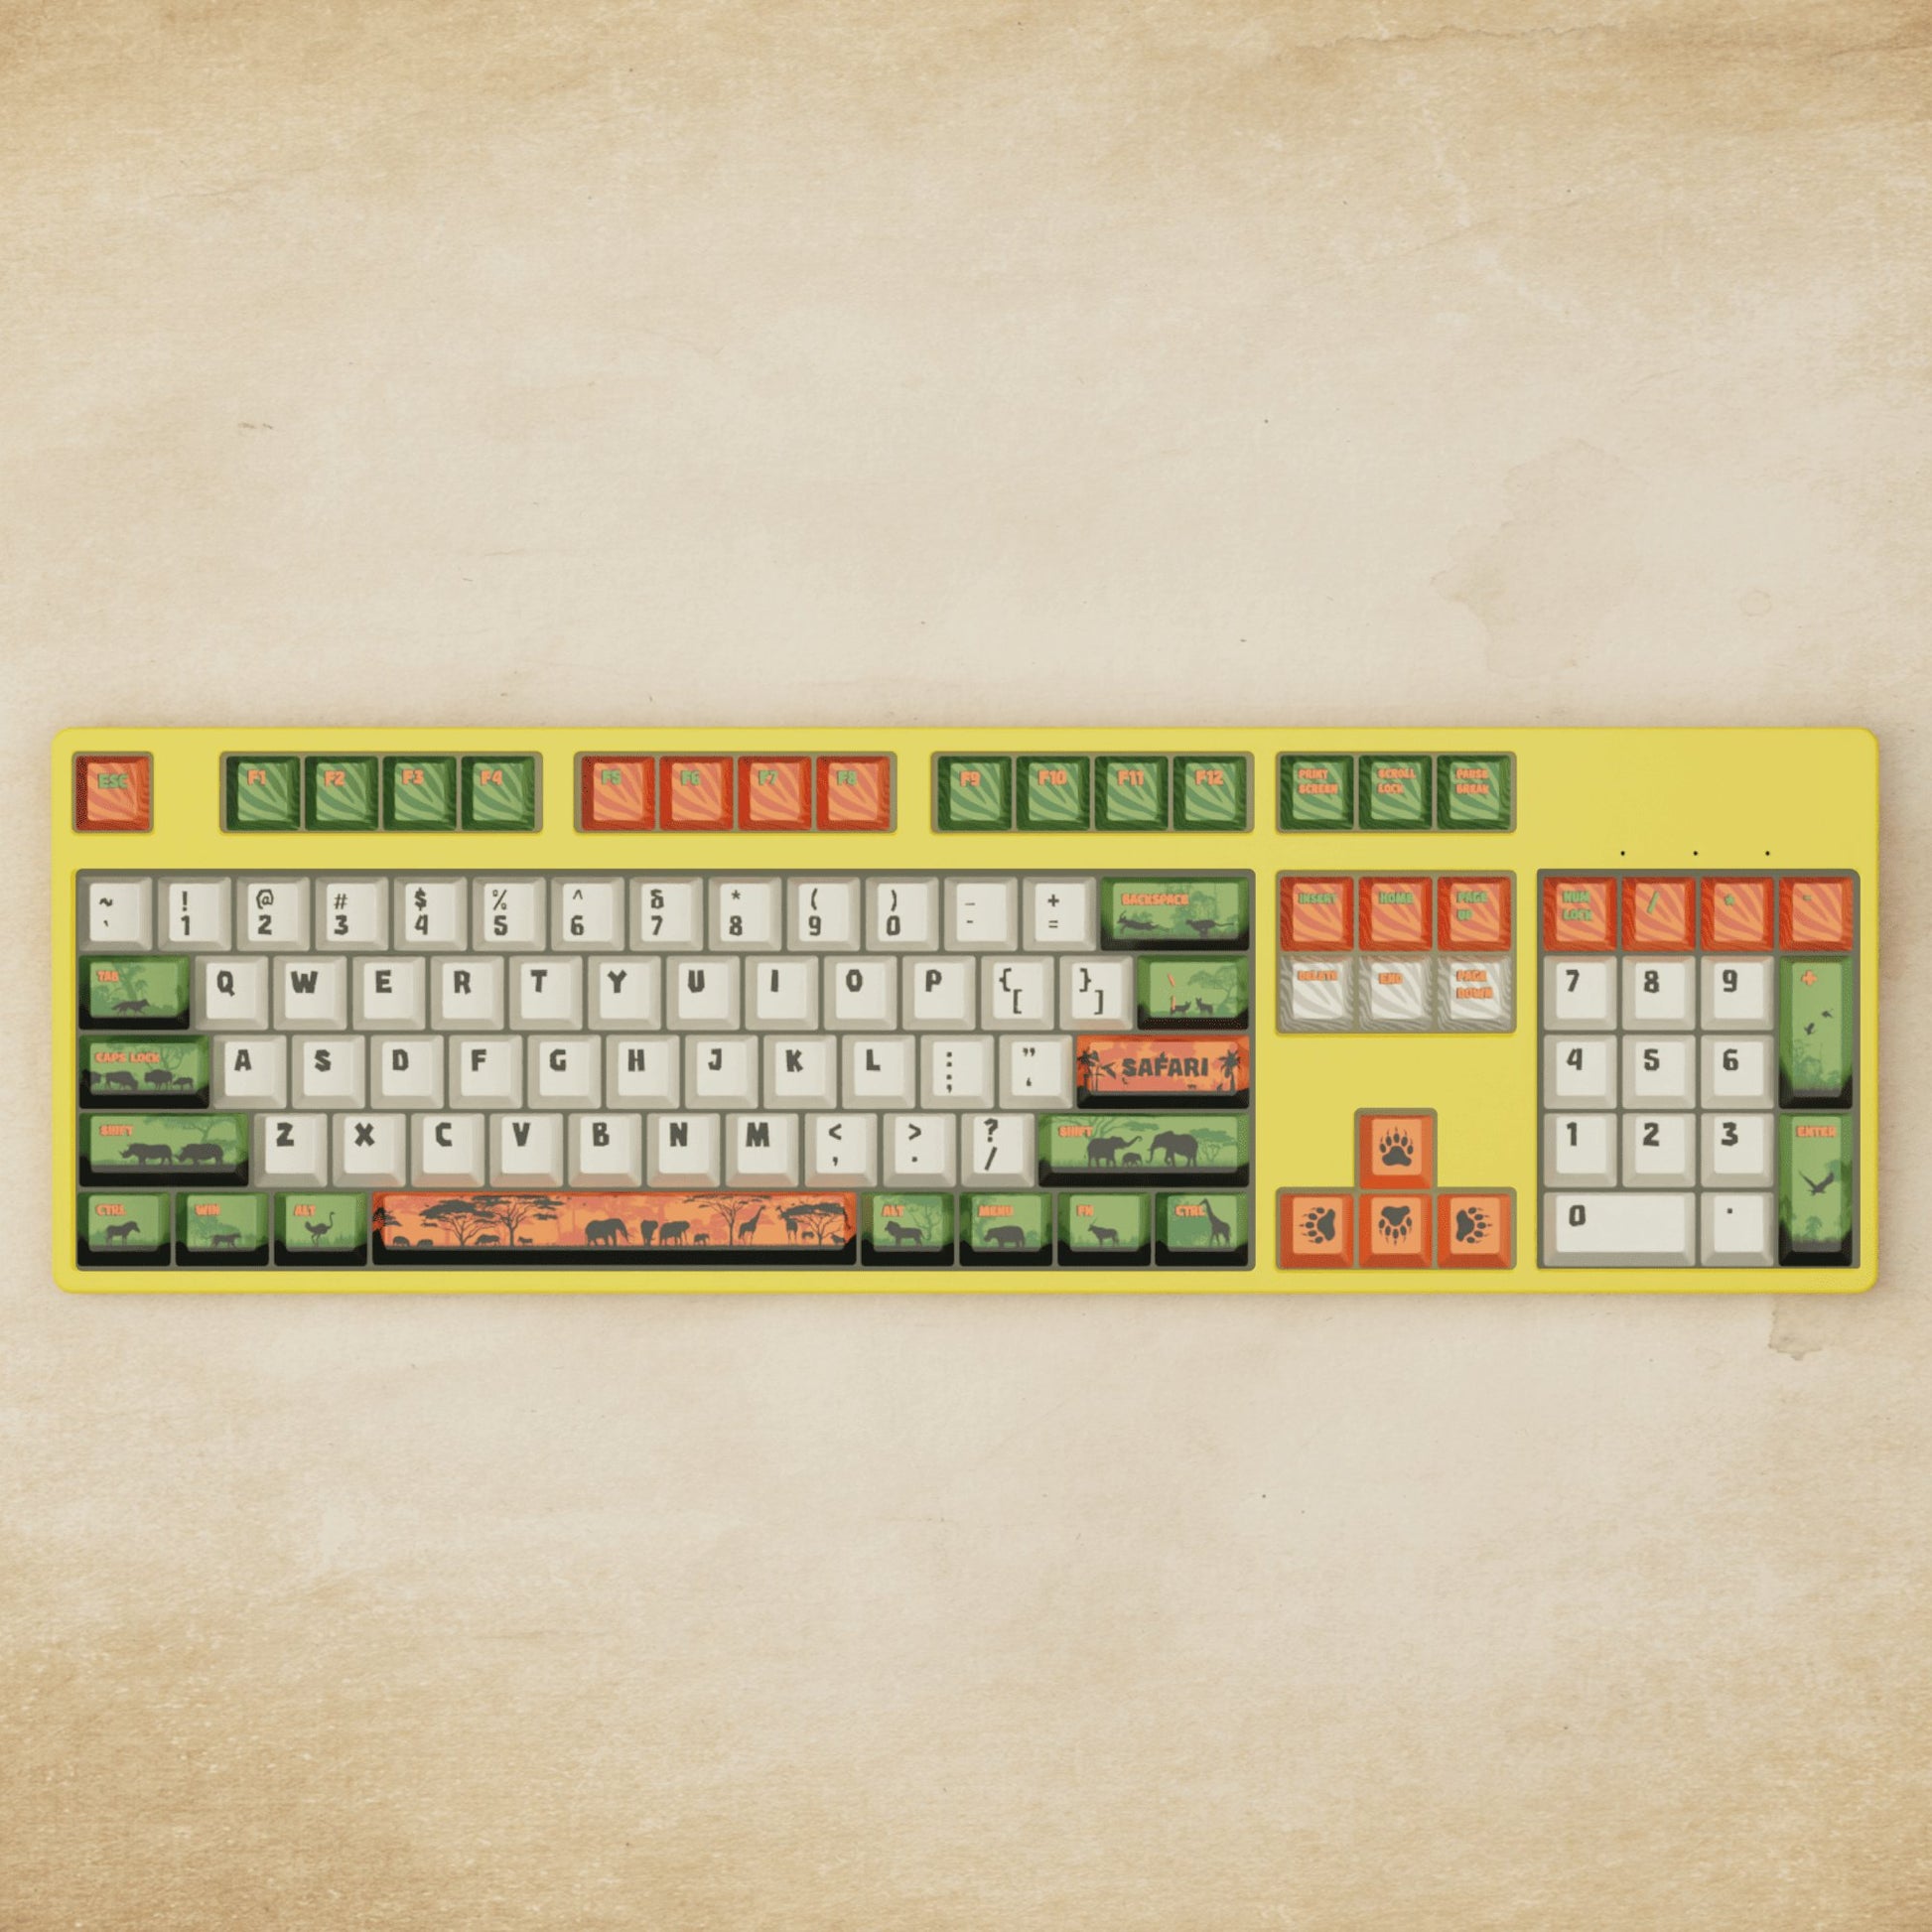 Alpha 108 - 100% Safari Mechanical Keyboard - Goblintechkeys